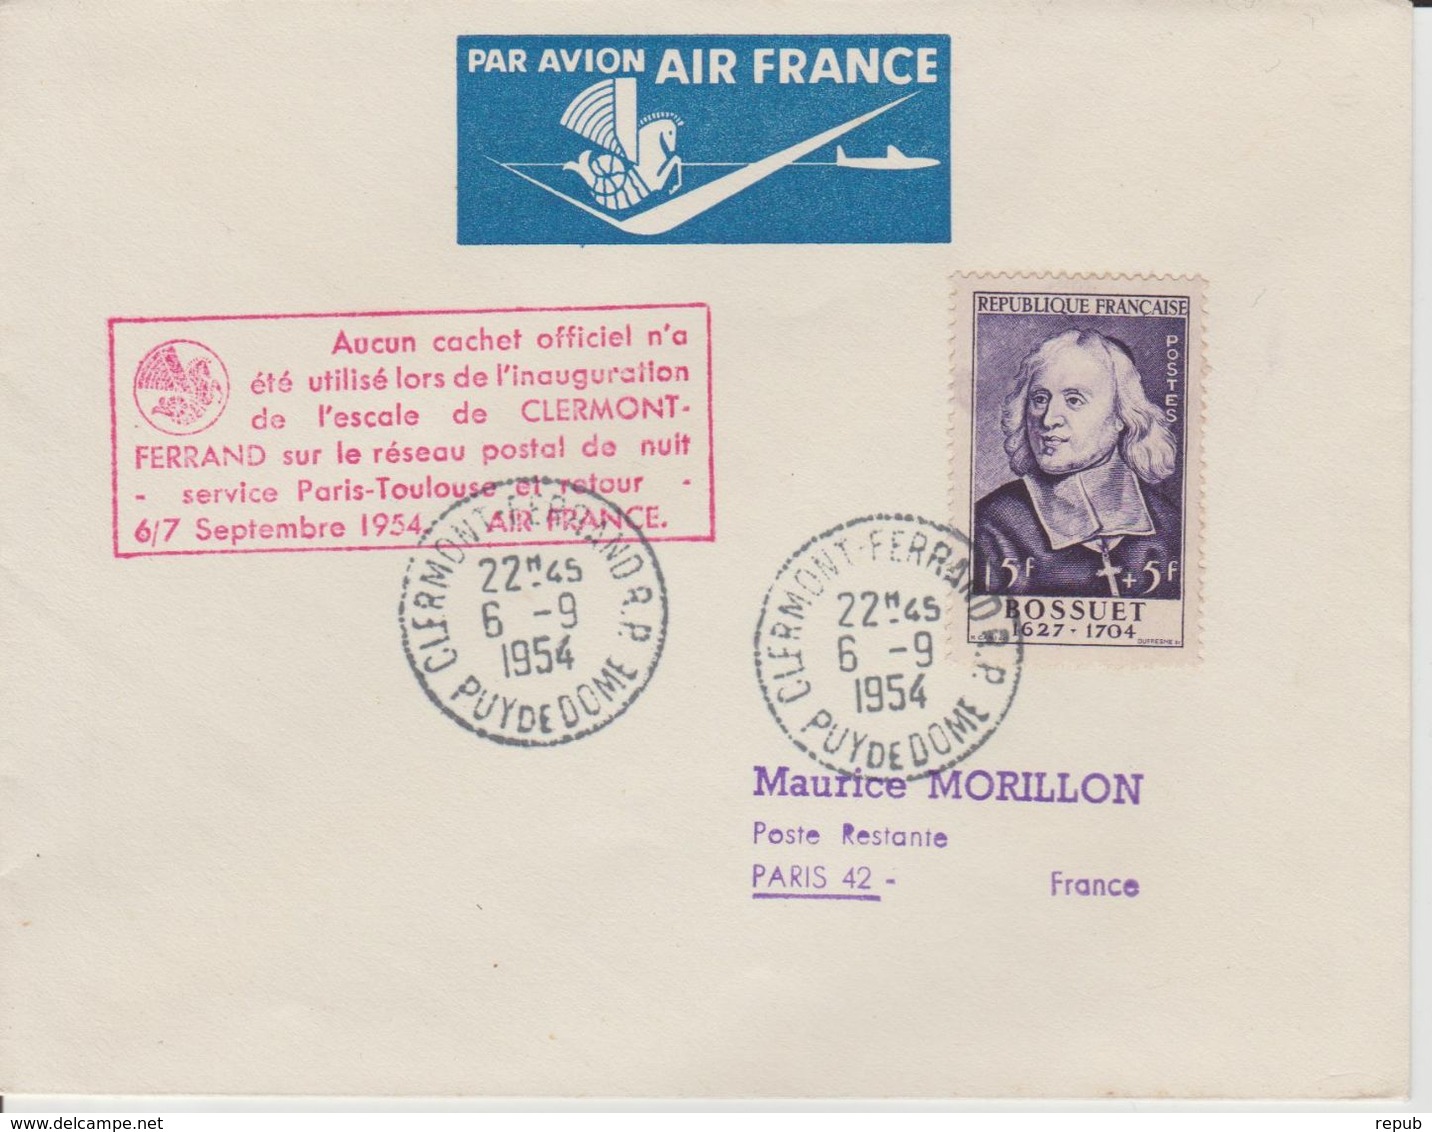 France 1954 Escale Clermont Ferrand Service Paris-Toulouse - Premiers Vols